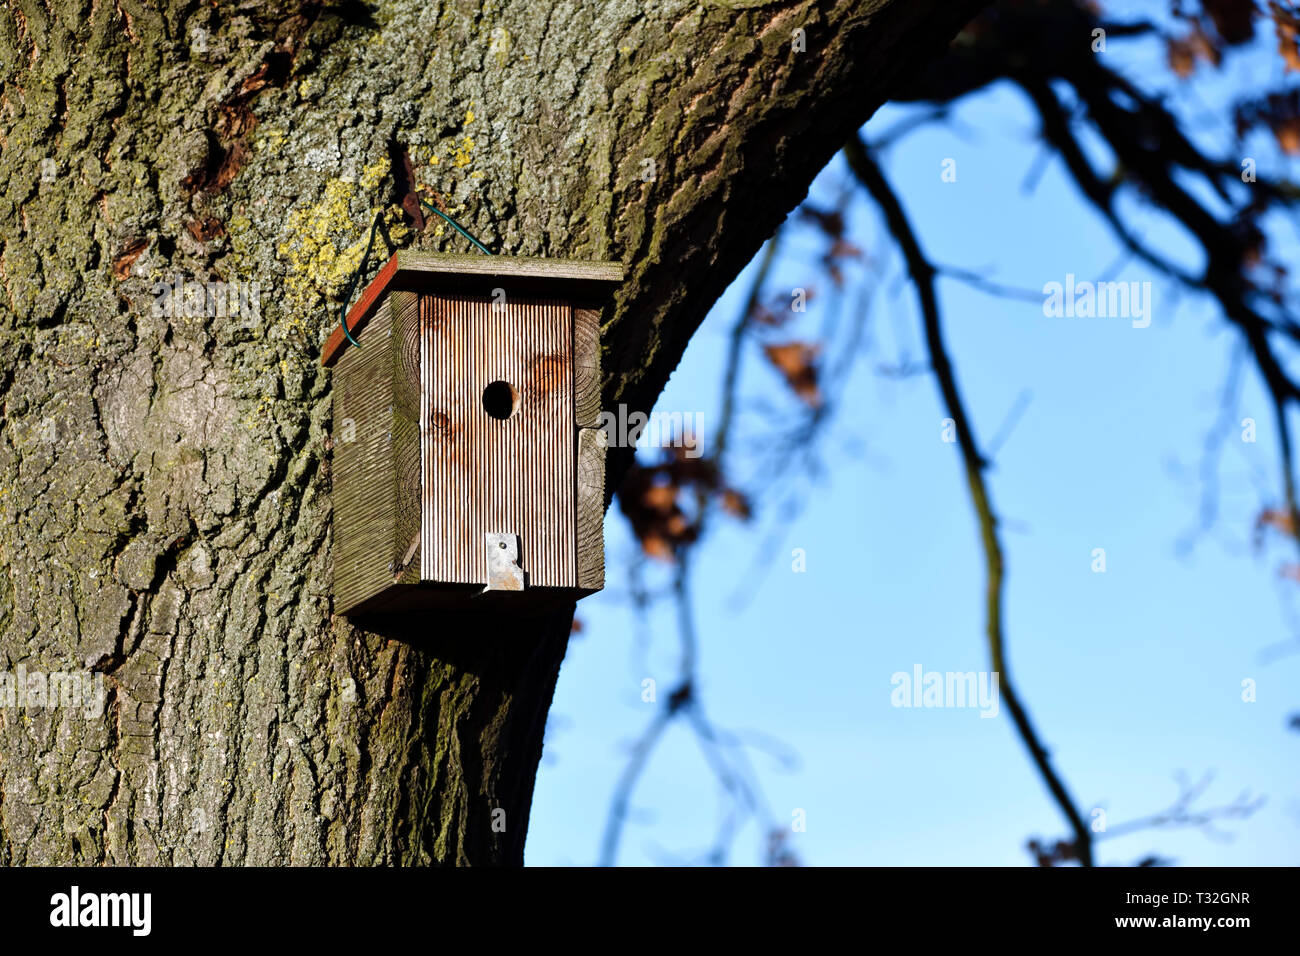 Nesting box in a tree, Nistkasten an einem Baum Stock Photo